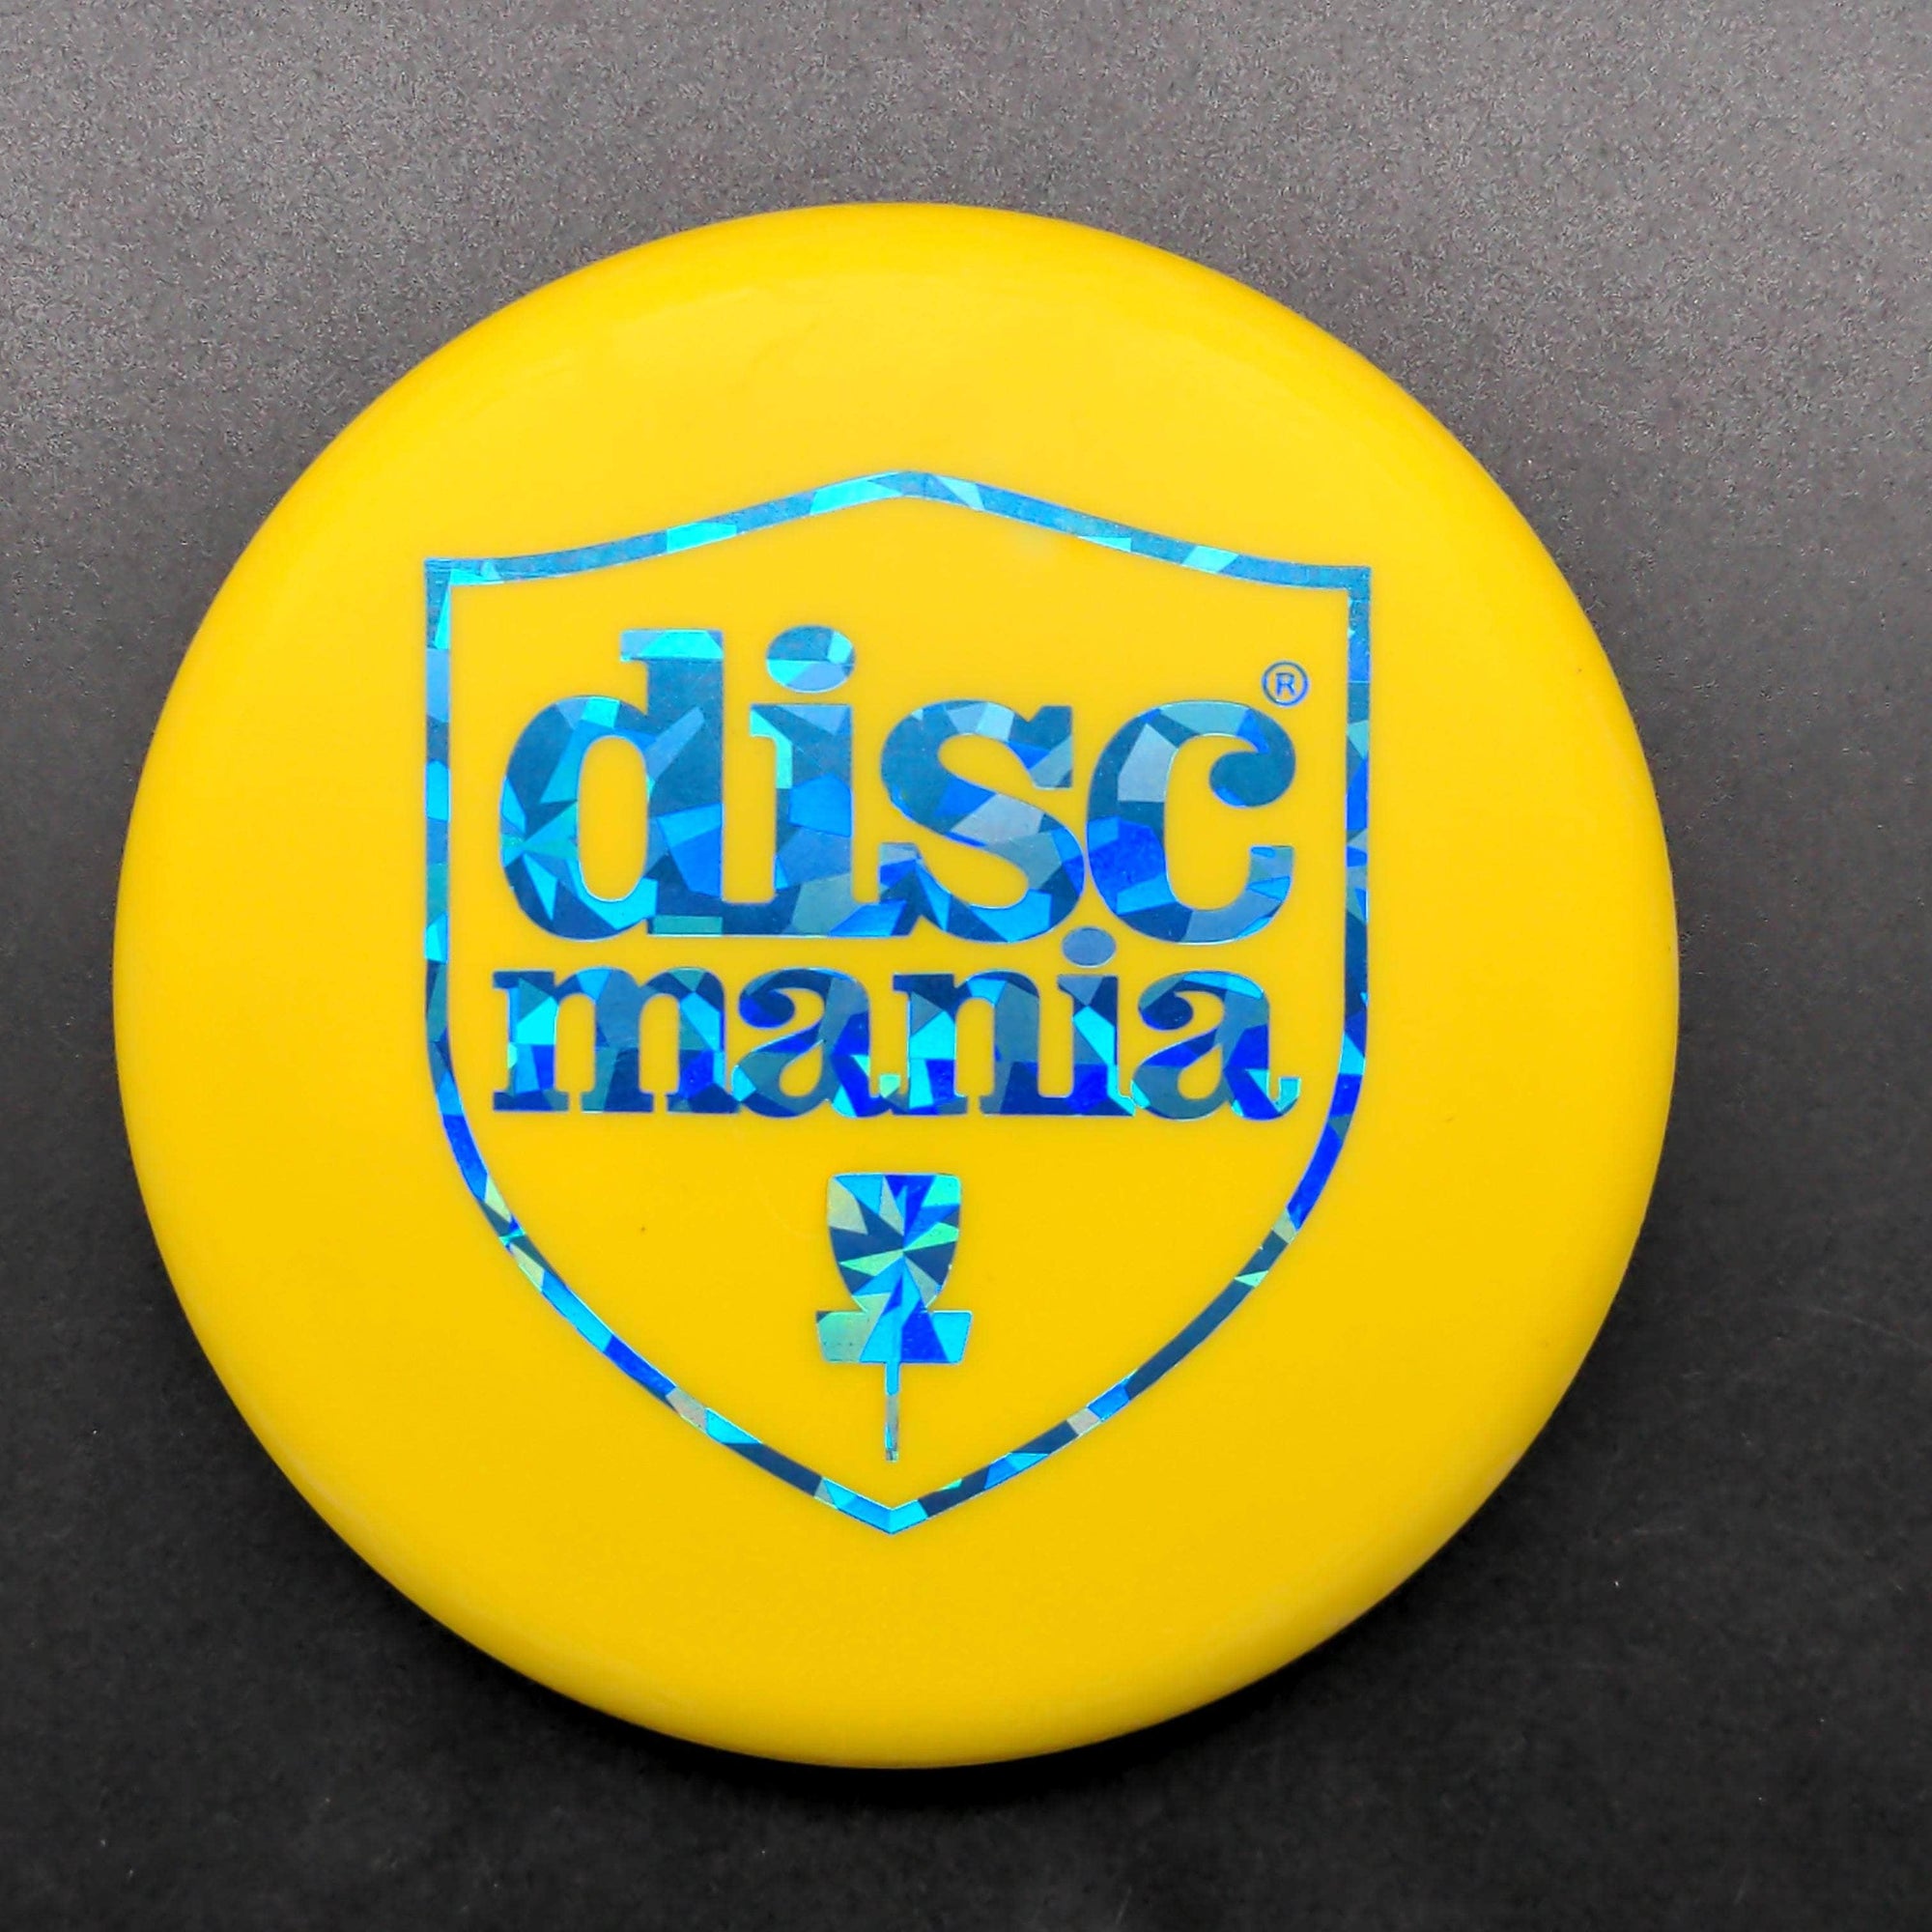 Discmania accessories Mini Marker, Discmania